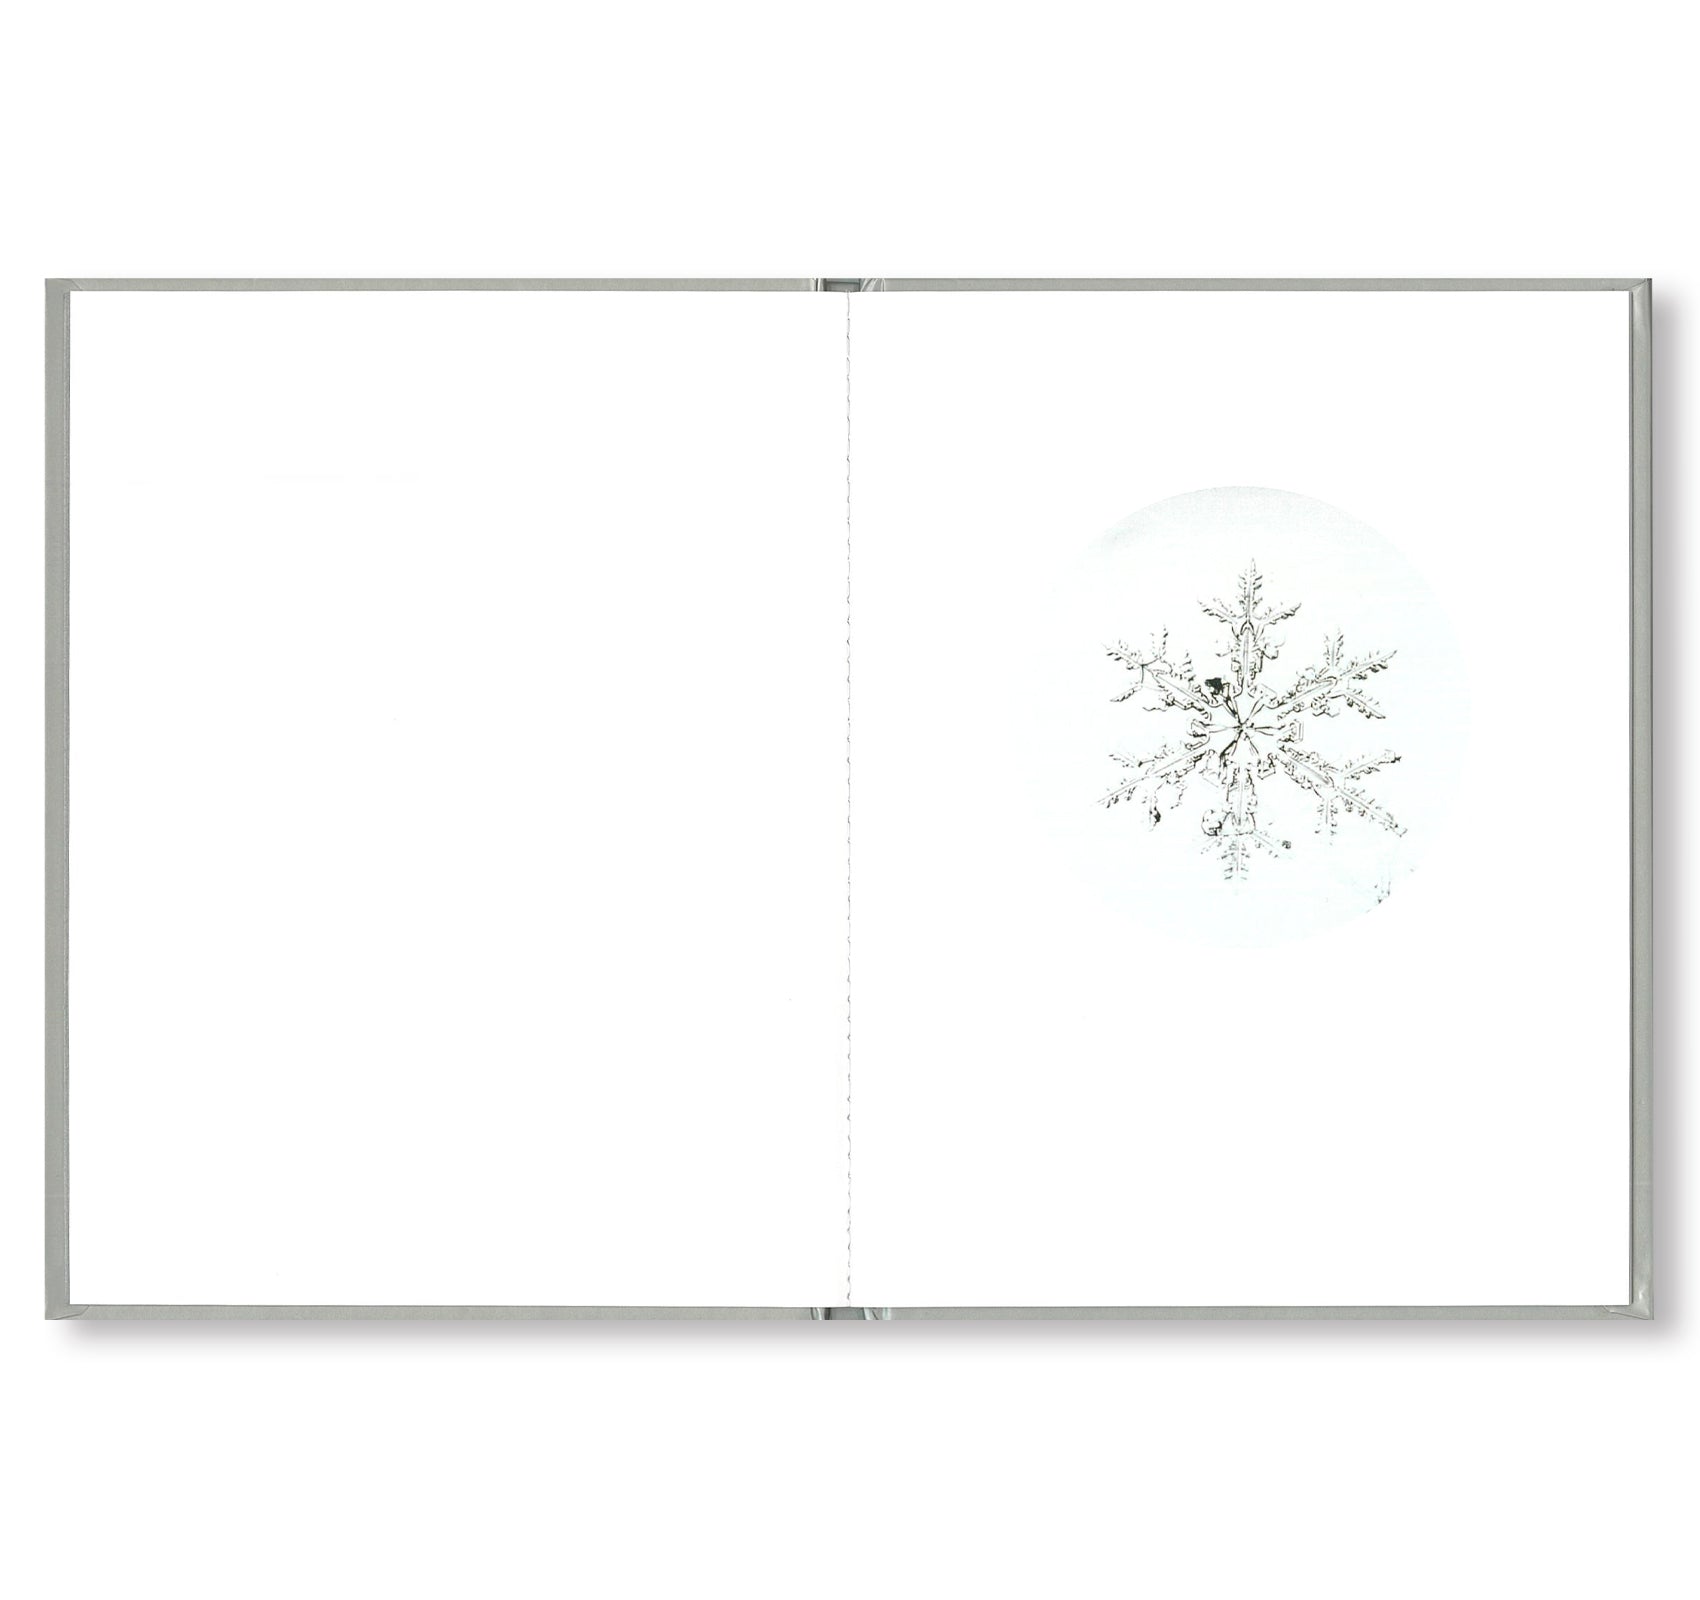 ONE PICTURE BOOK #80: SNOW LETTER by Risaku Suzuki